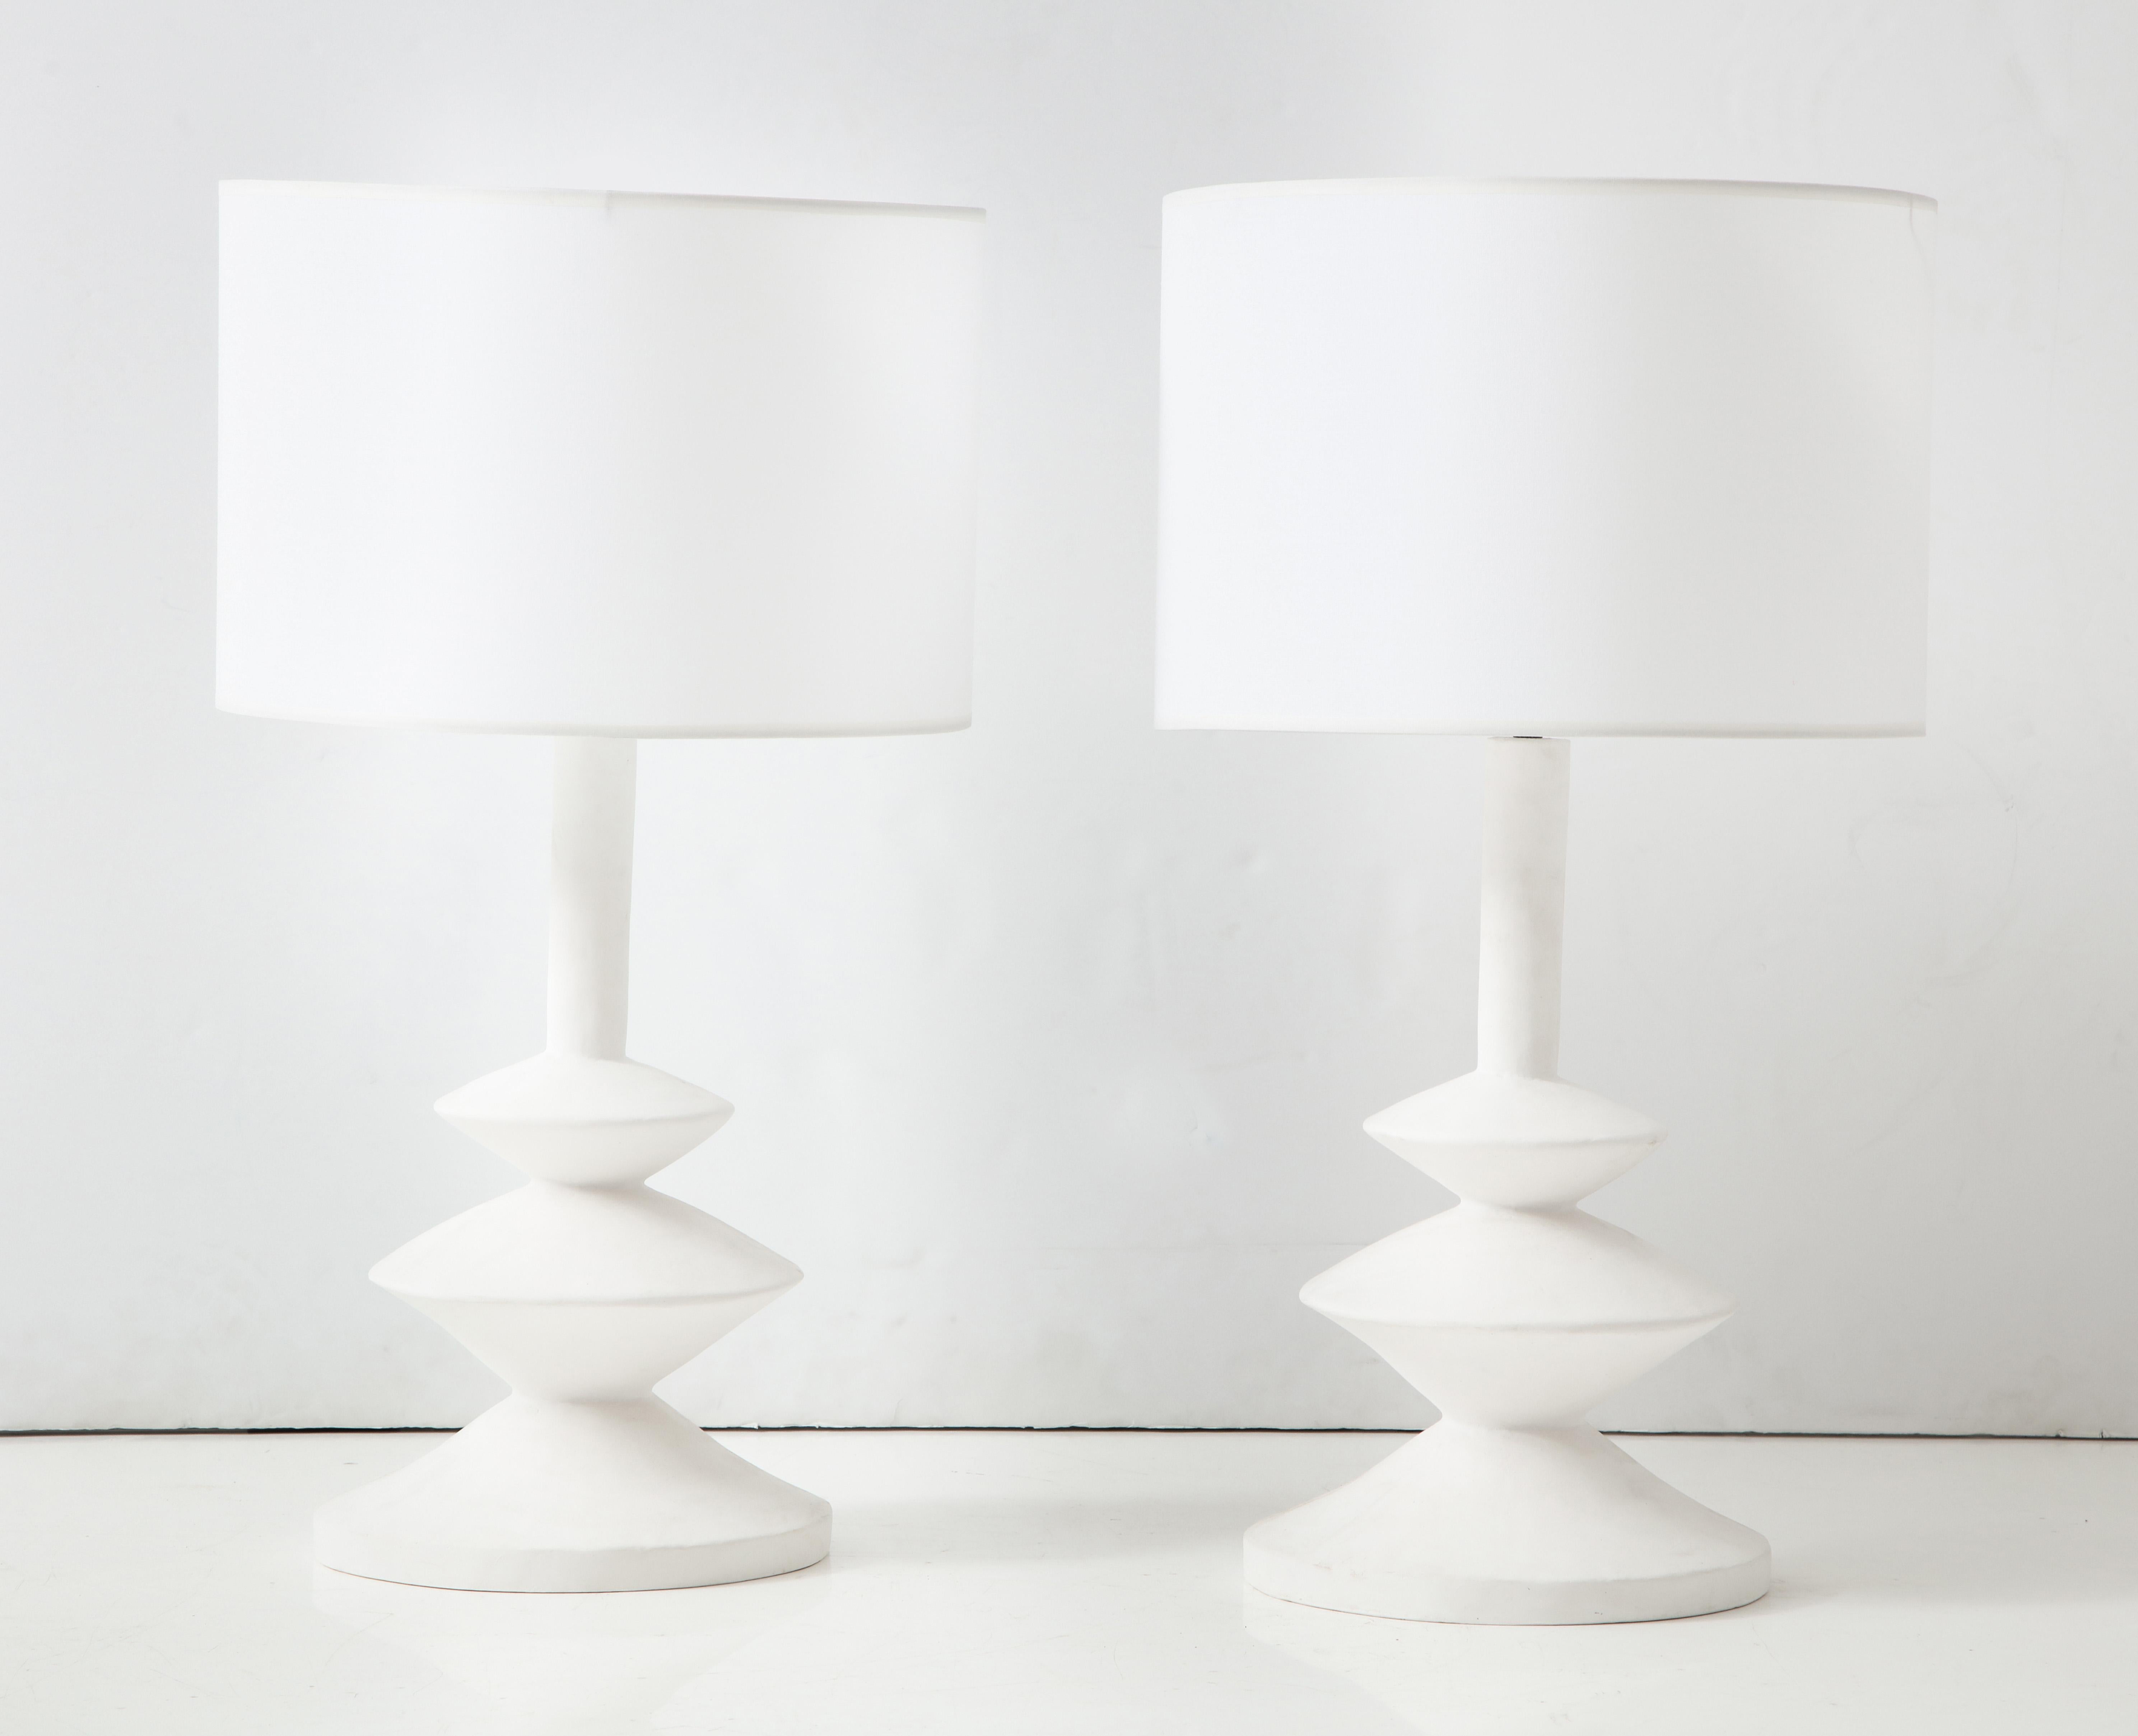 Paire de lampes en plâtre françaises sur mesure, à la manière d'Alberto Giacometti.
Les abat-jour ne sont pas inclus. Une paire est actuellement disponible.
Le délai de réalisation d'un produit personnalisé est de 8 à 10 semaines.